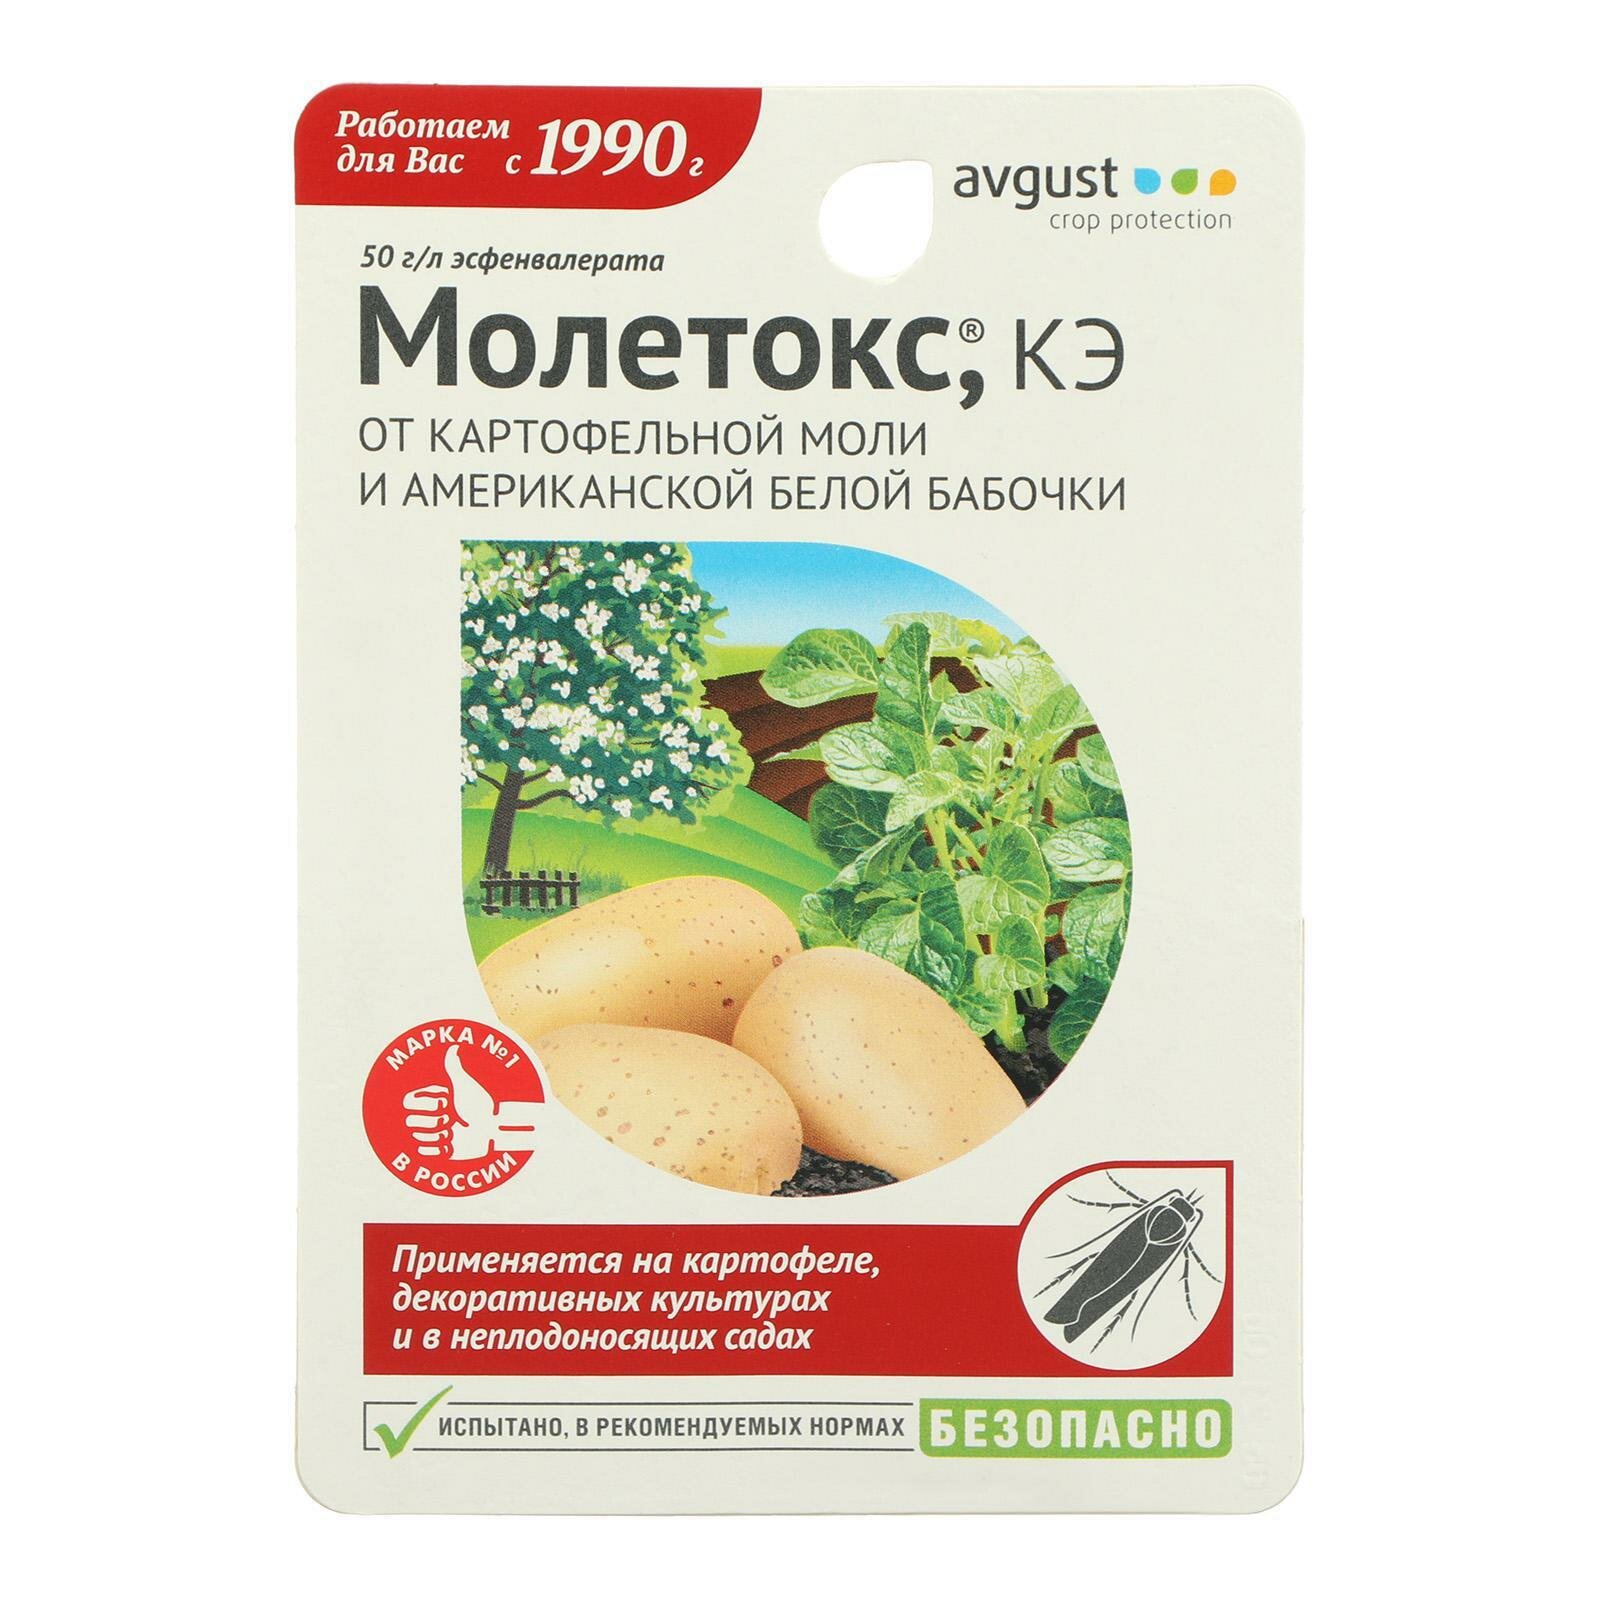 Молетокс - средство для защиты от картофельной моли и бабочки, 1 шт по 10 мл. Avgust